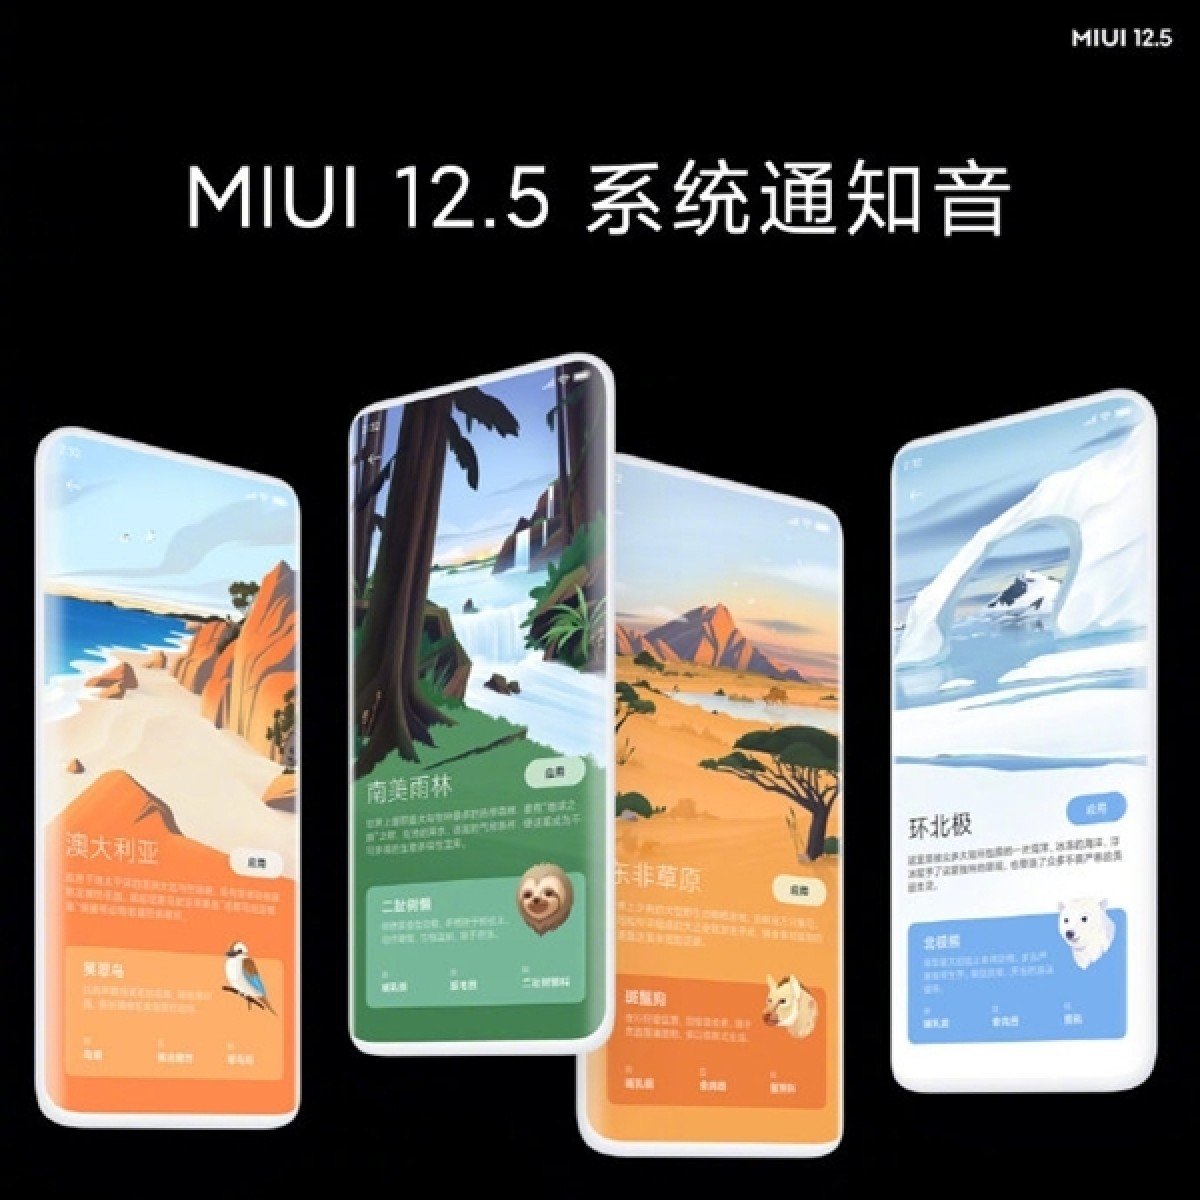 رابط کاربری MIUI 12.5